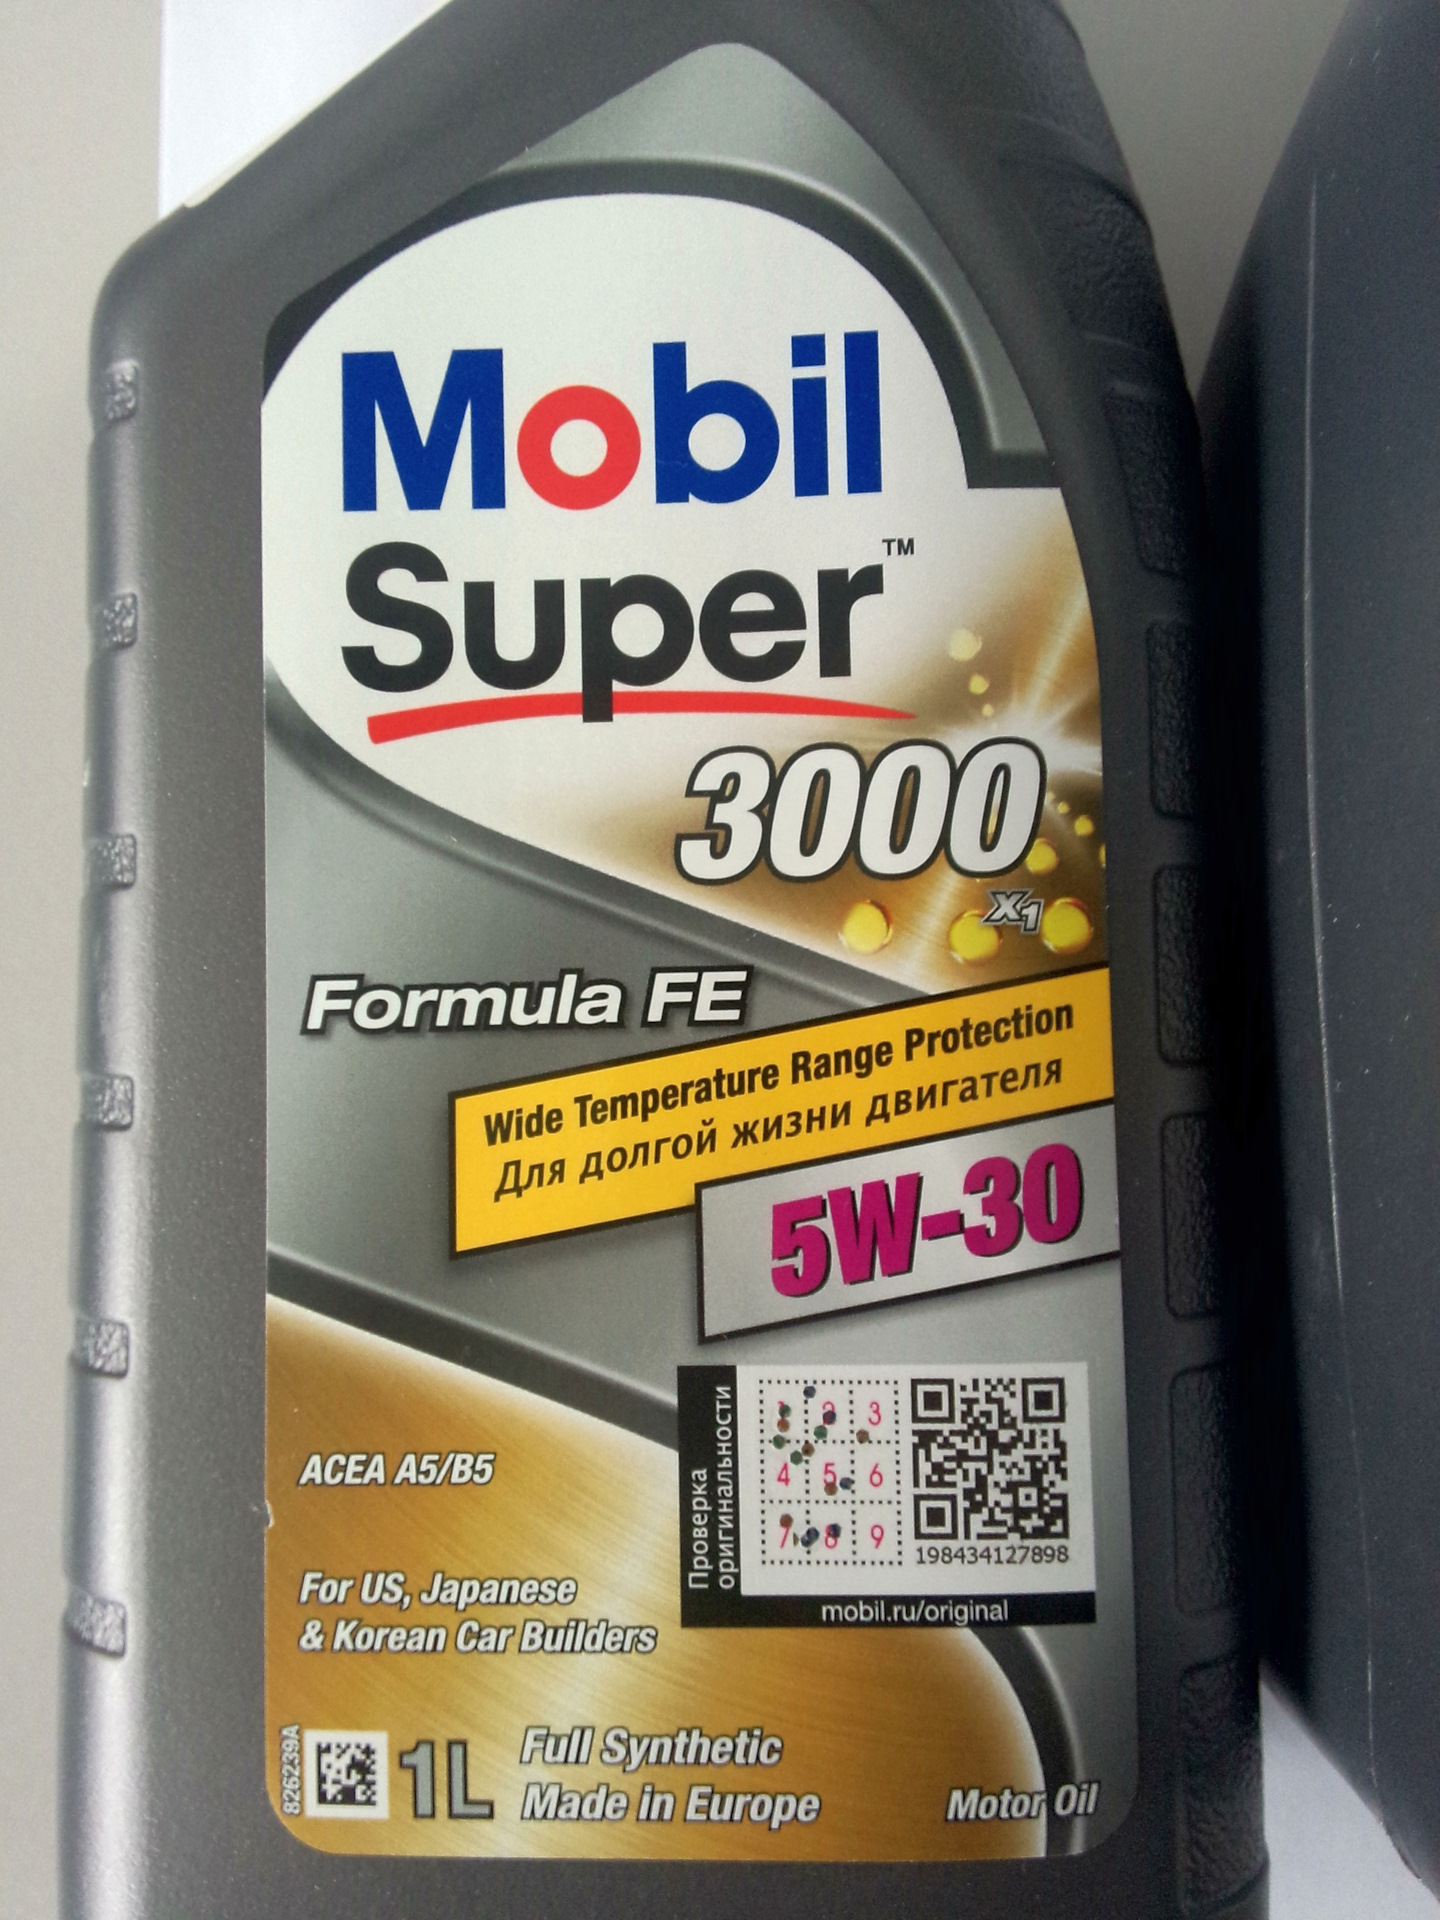 Mobil super 3000 x1 Formula Fe вид снизу. Масло мобил 5w30 Formula Fe. Моторное масло mobil super 3000 x1 Formula Fe 5w-30 1 л. Mobil super 3000 из Европы.